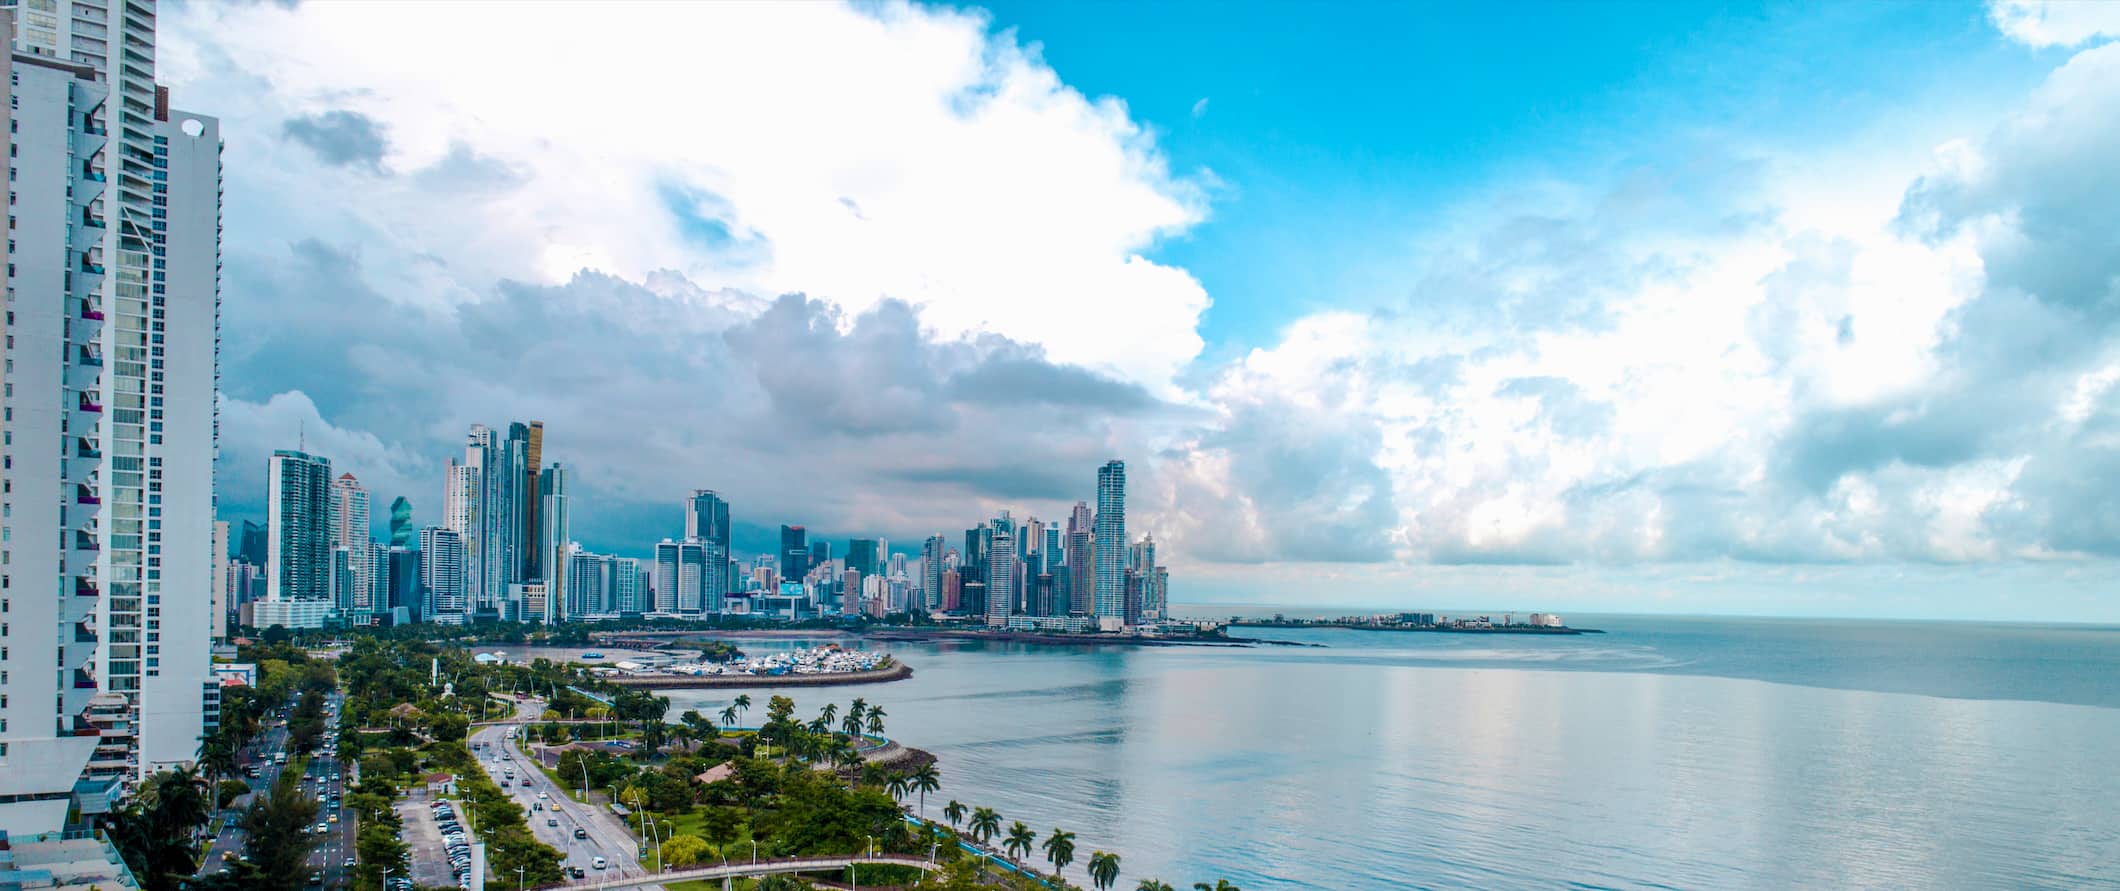 Vistas do trânsito e da paisagem urbana na Cidade do Panamá